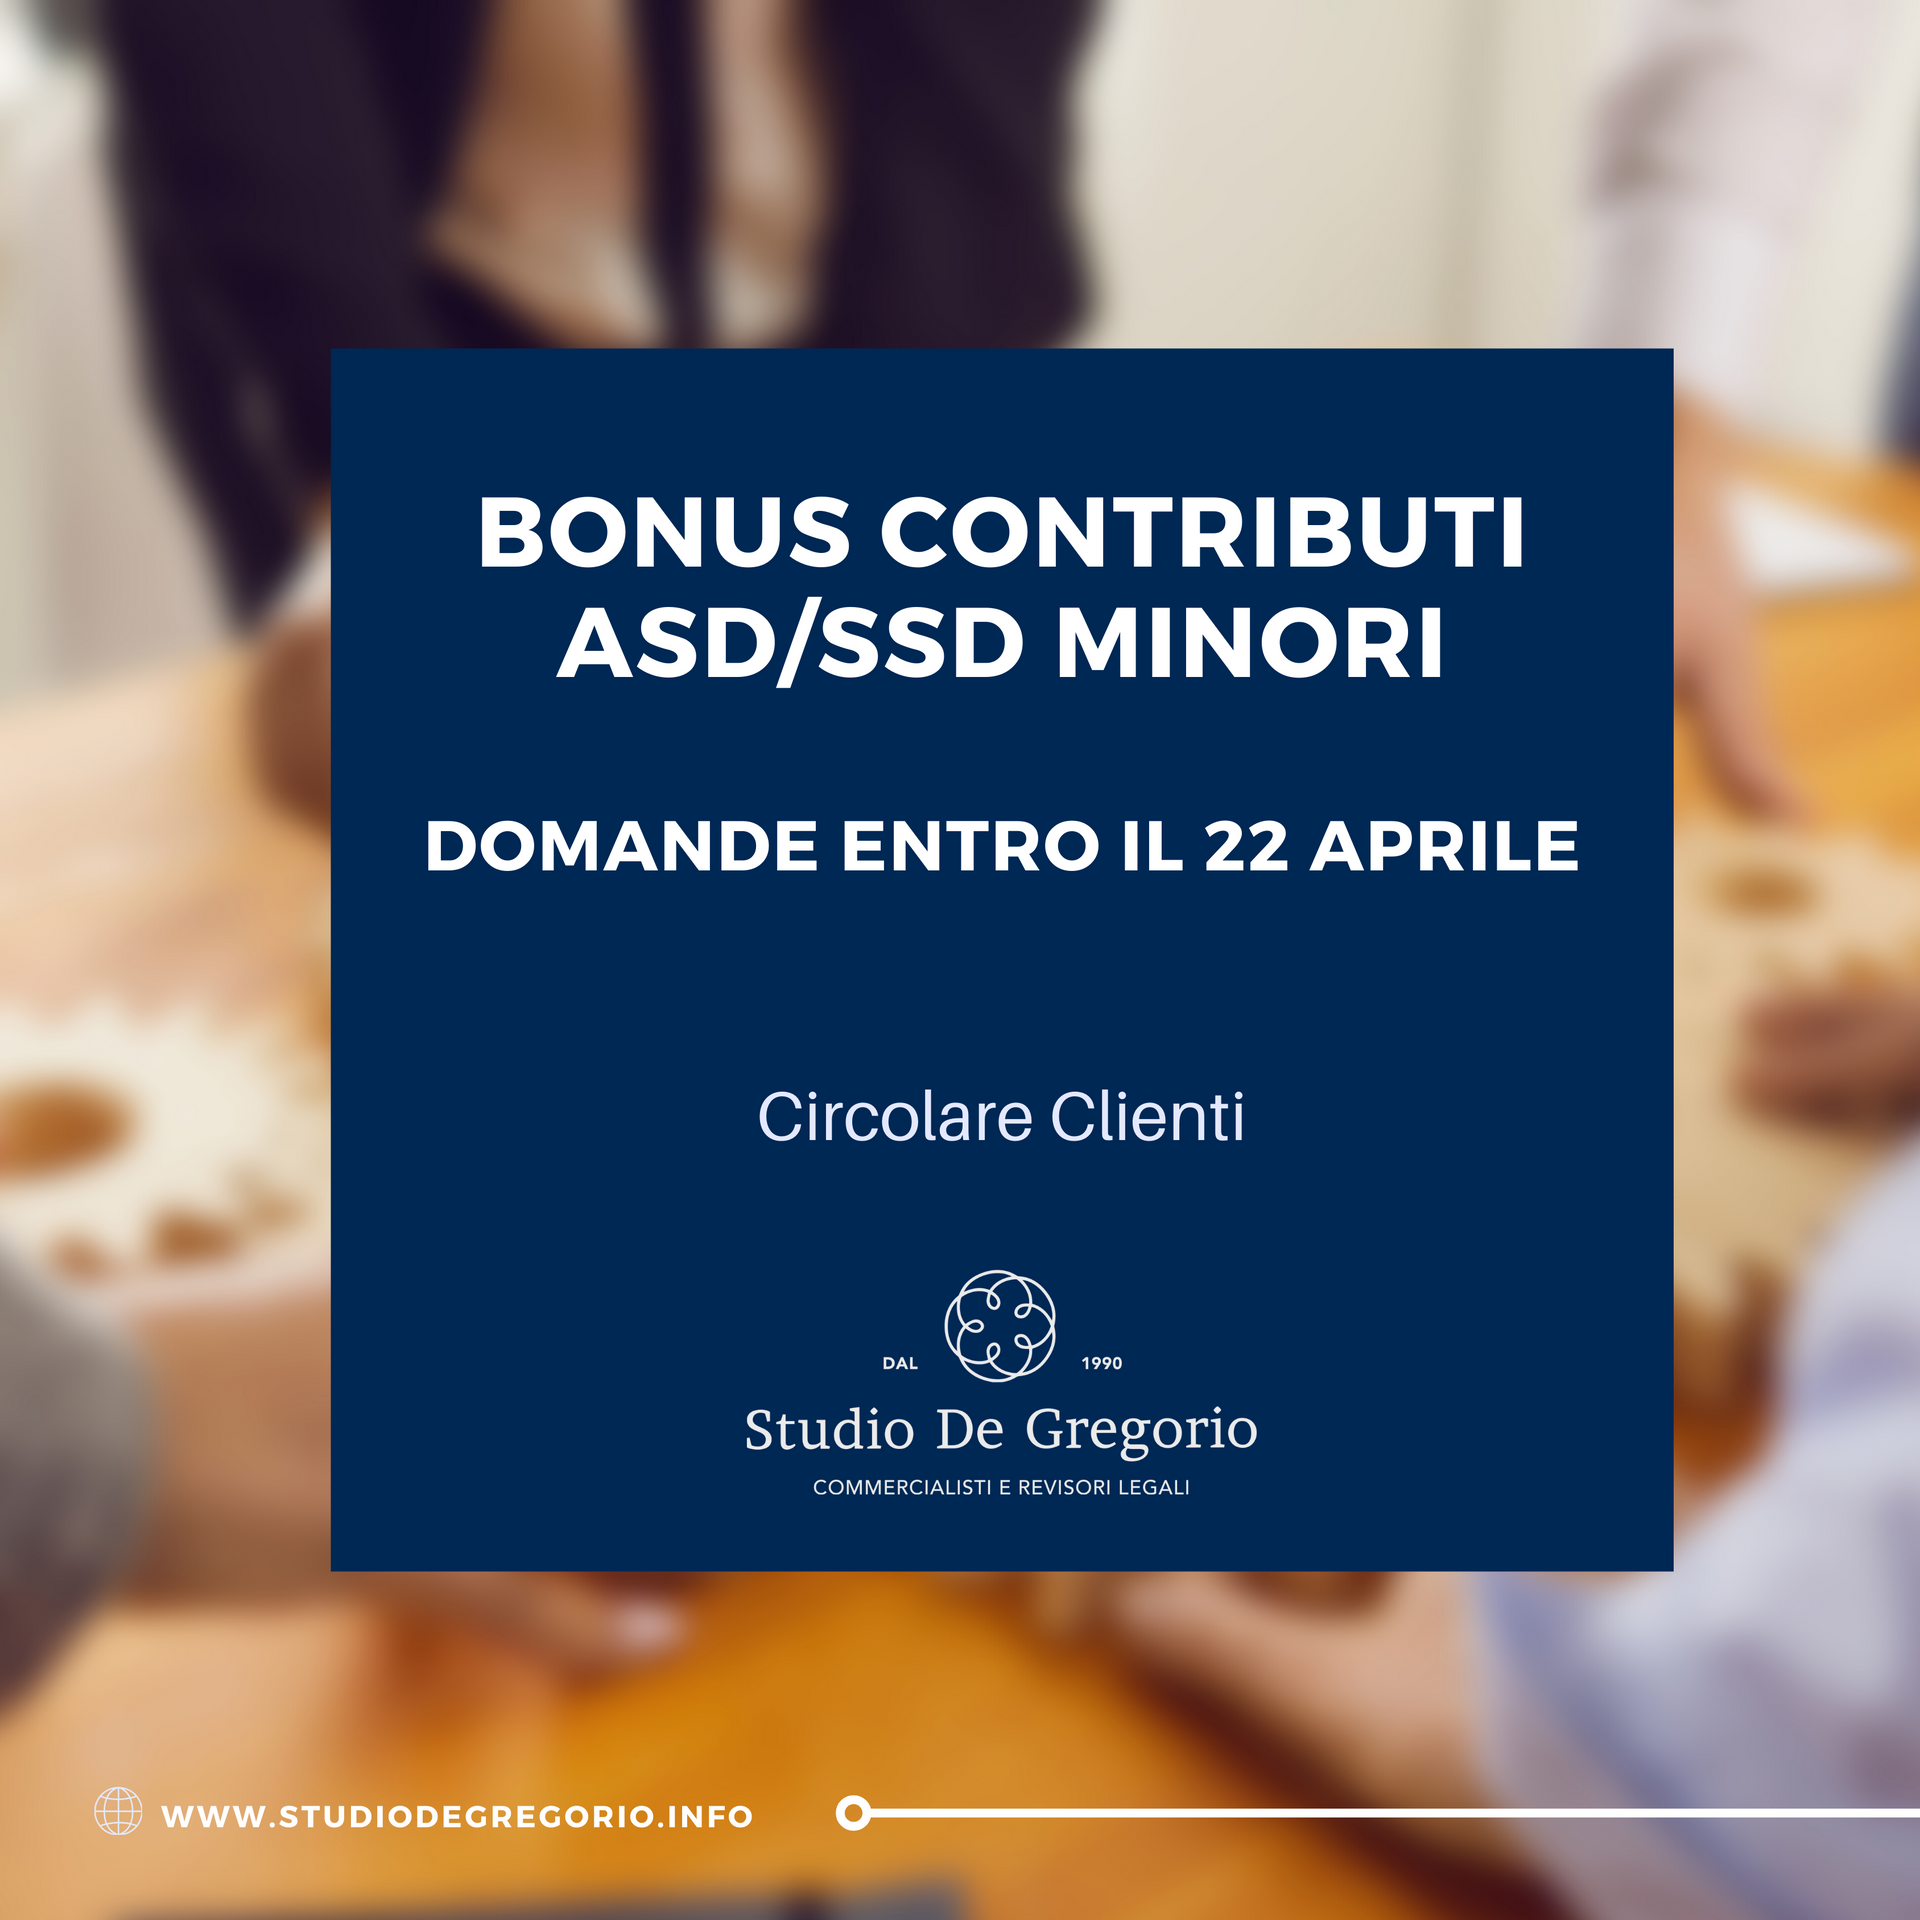 bonus contributi asd ssd minori domande fisco fiscale contributo pinerolo roma torino